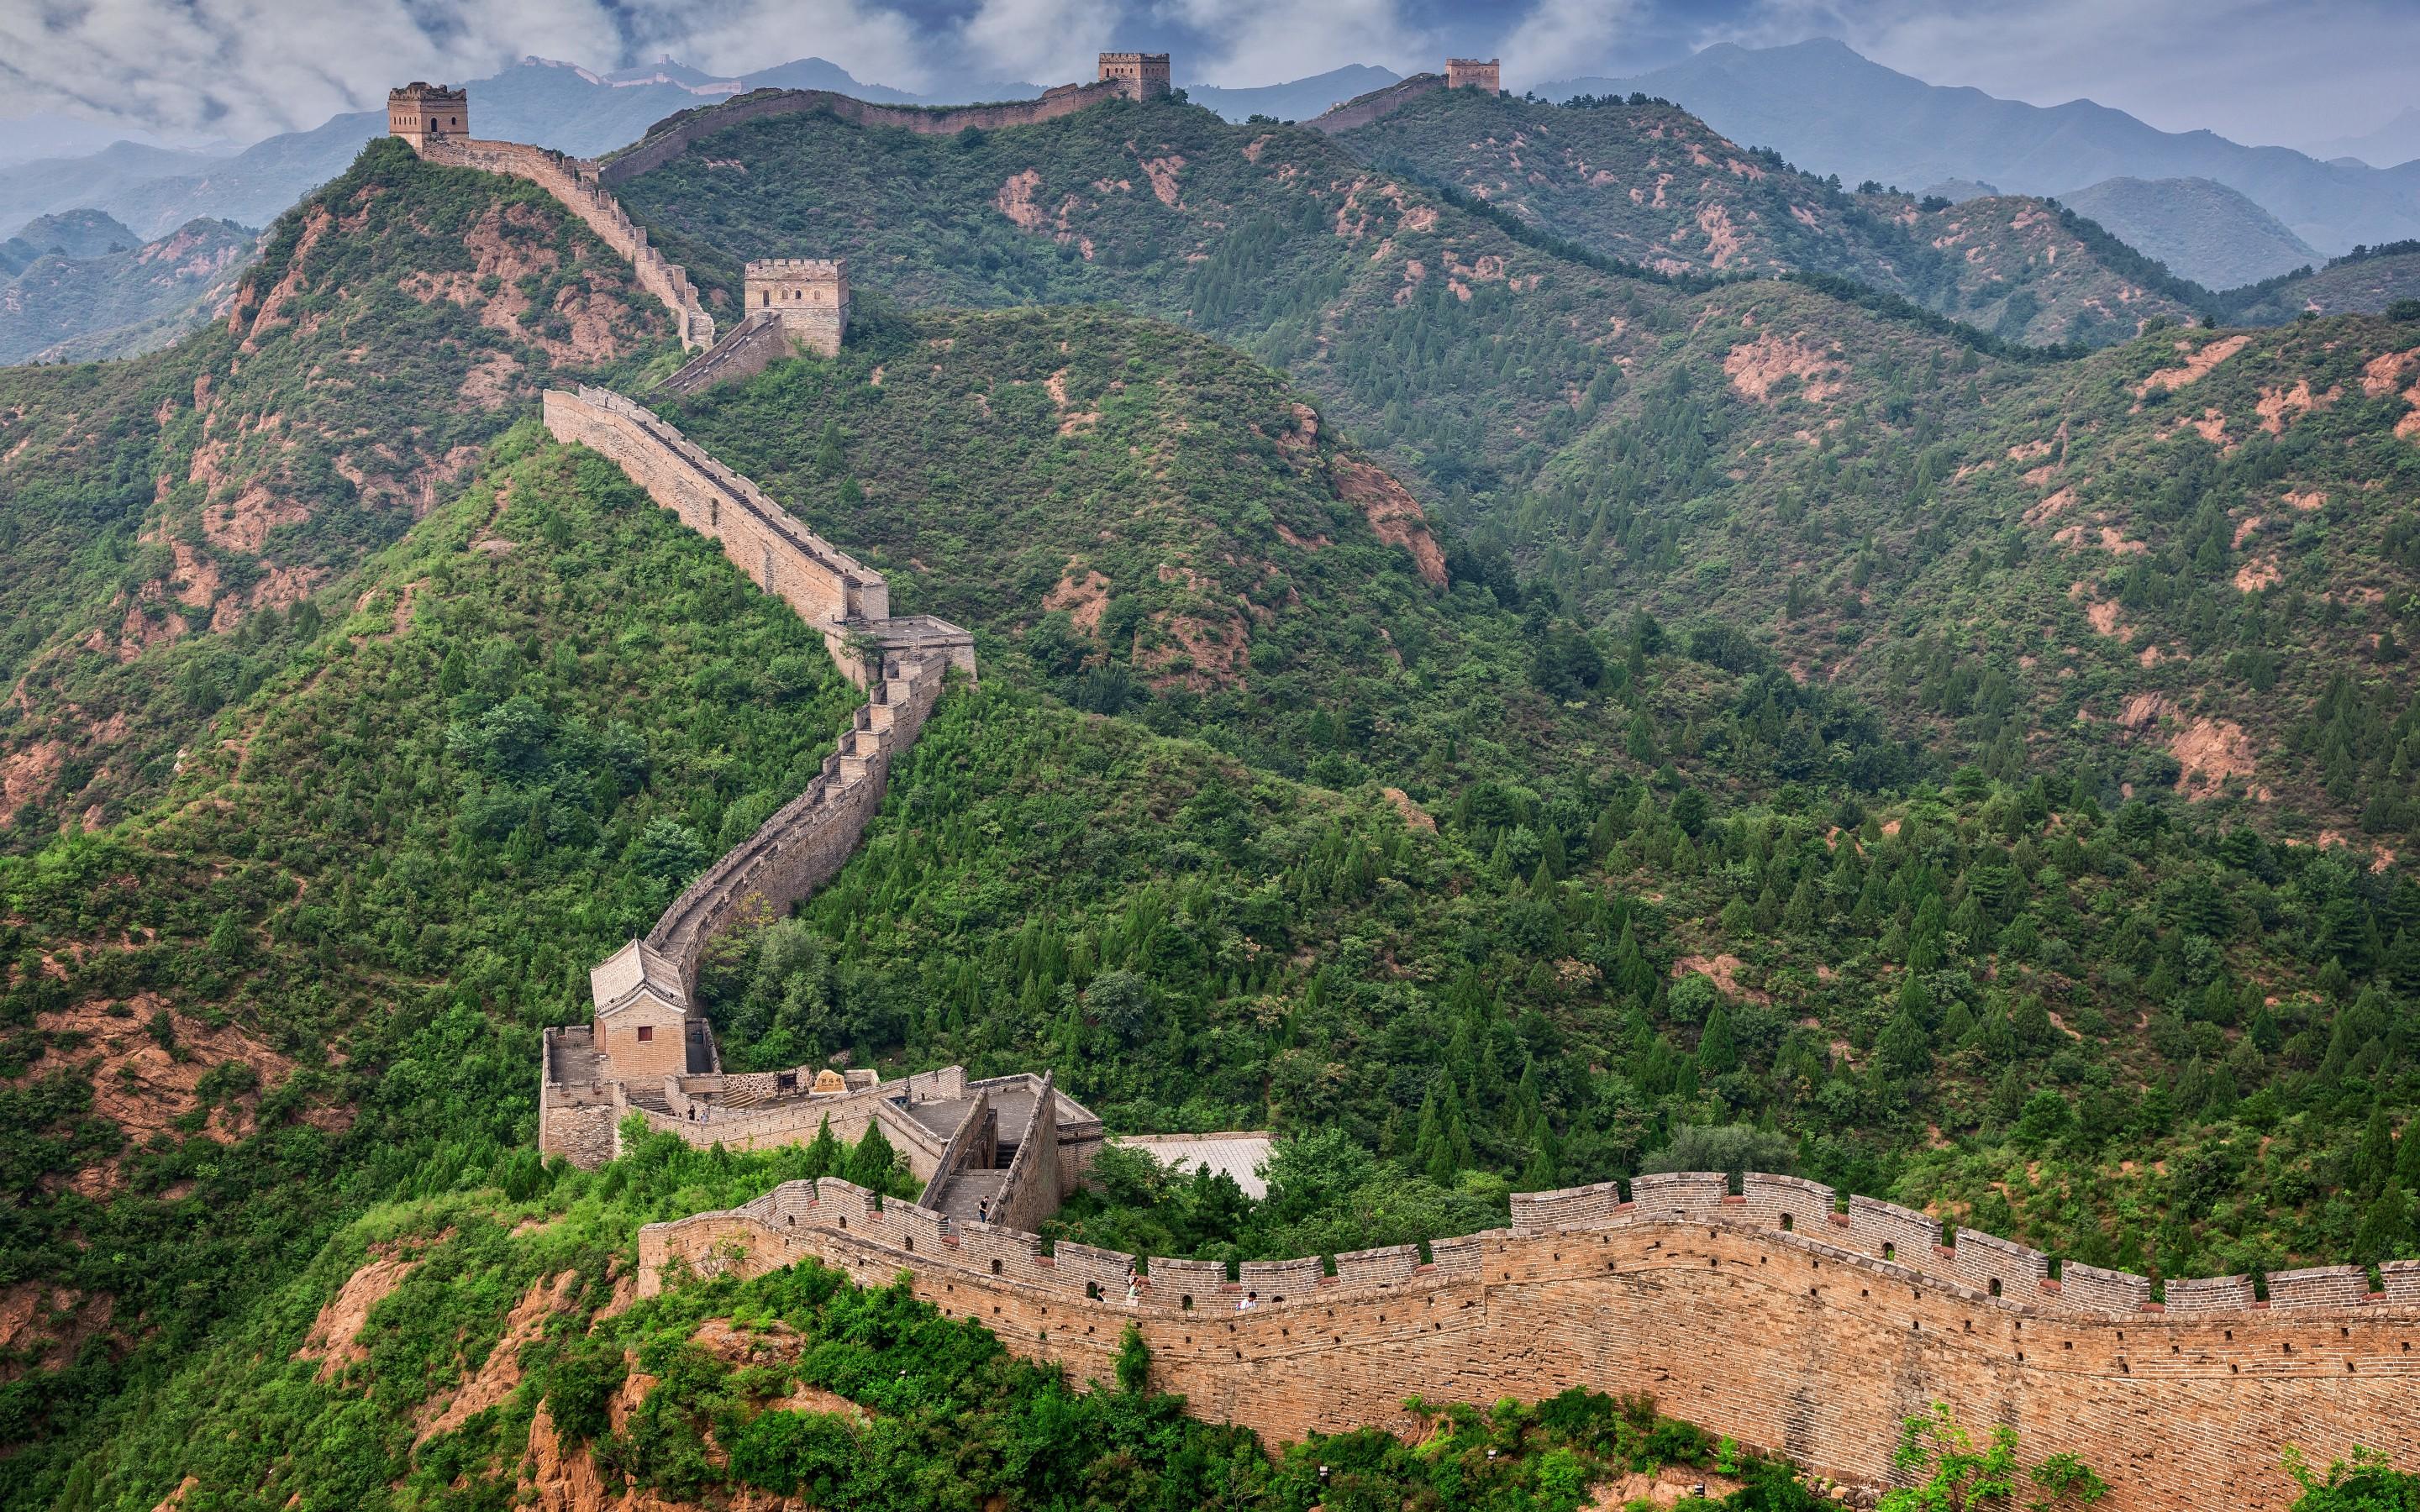 Great Wall of China Wallpaper. Wall